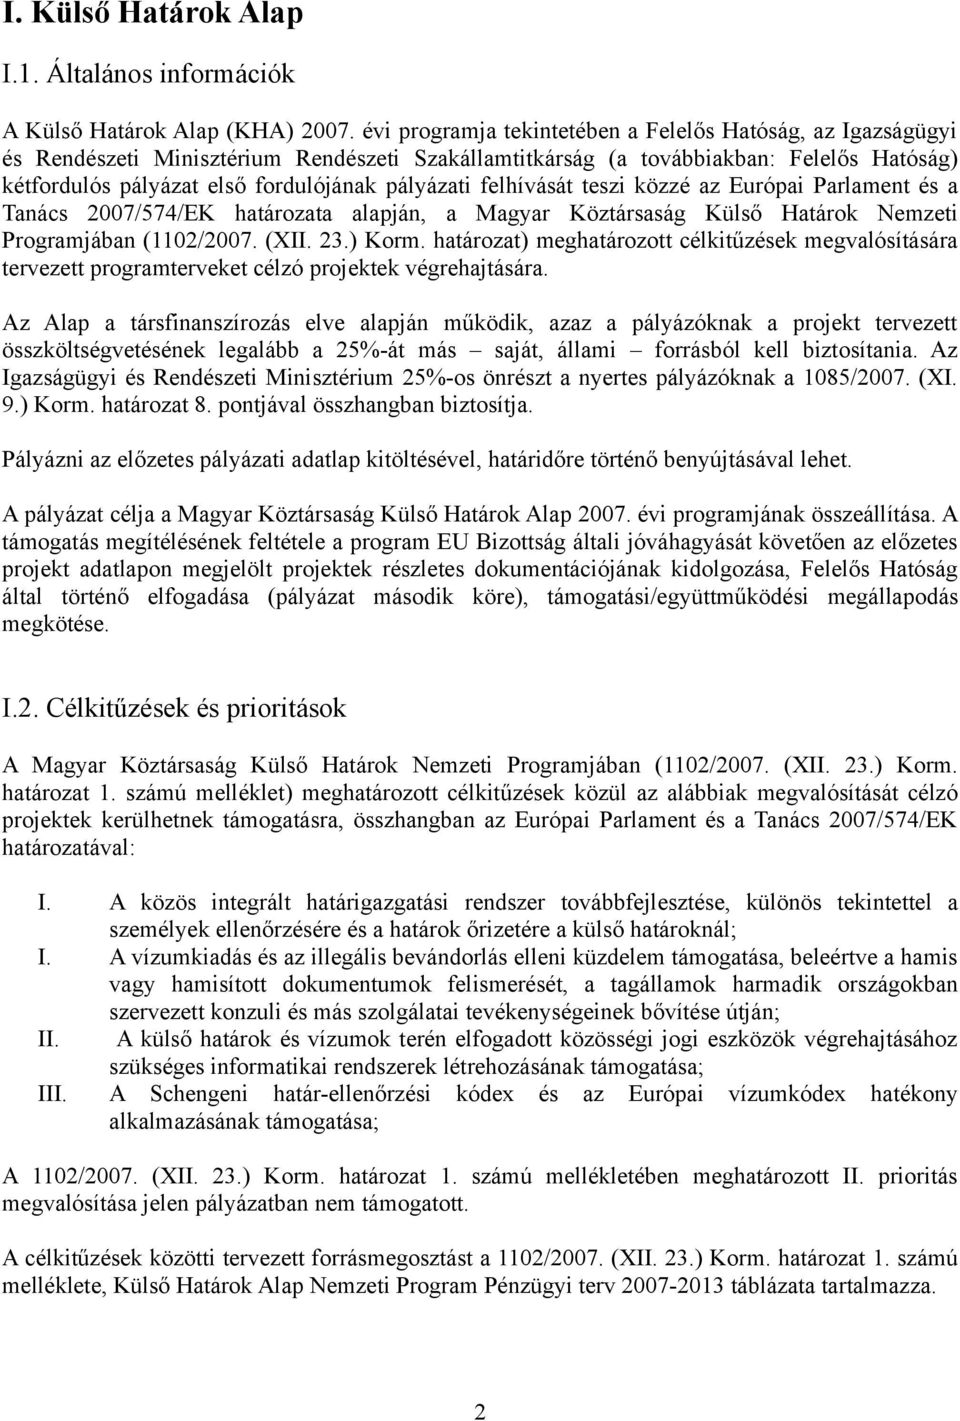 pályázati felhívását teszi közzé az Európai Parlament és a Tanács 2007/574/EK határozata alapján, a Magyar Köztársaság Külső Határok Nemzeti Programjában (1102/2007. (XII. 23.) Korm.